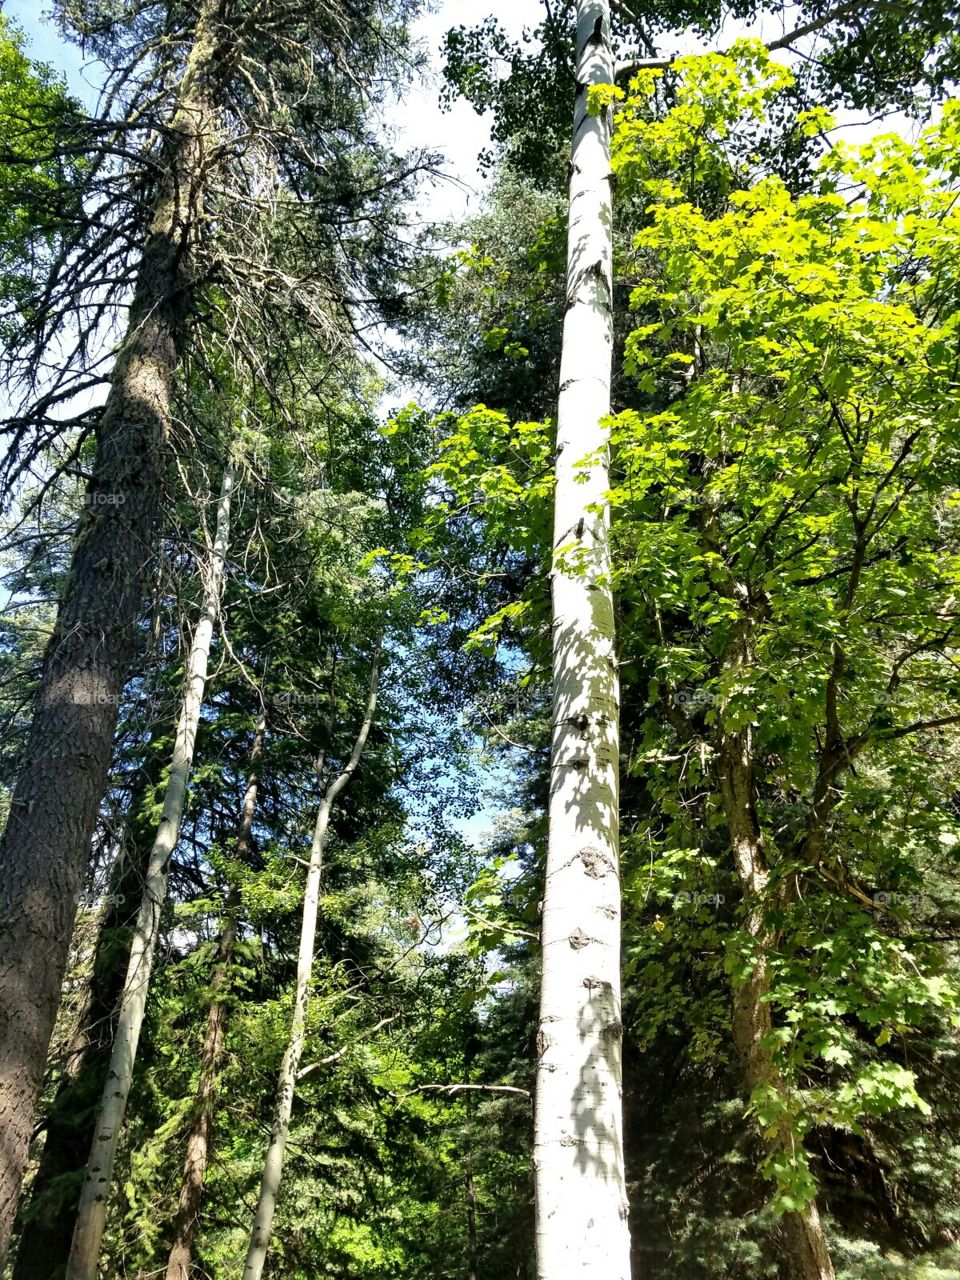 Aspen amongst the Ponderosa Pines